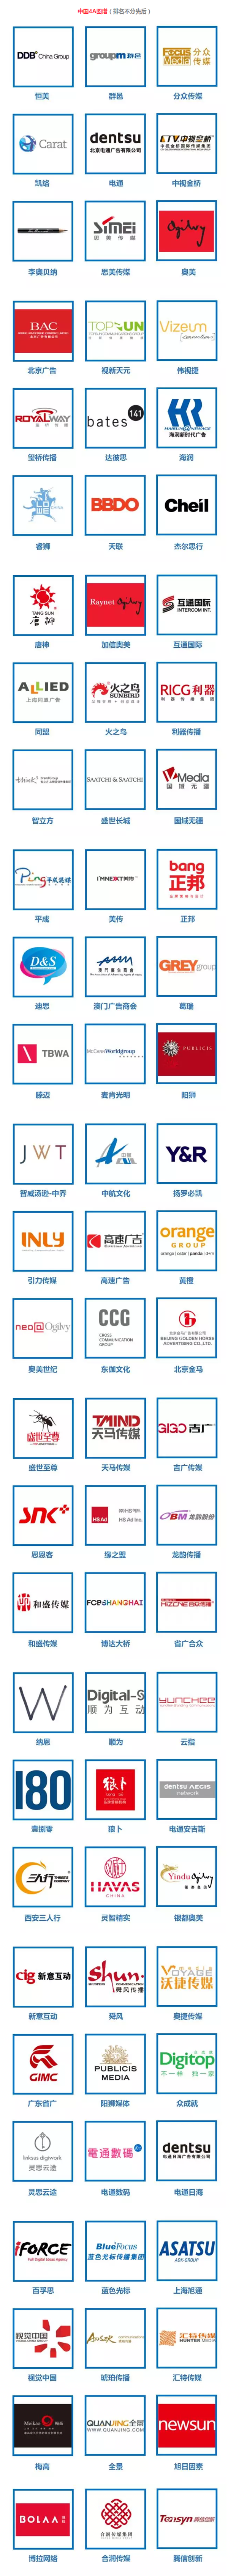 中国4A广告公司图谱【2016版】.png